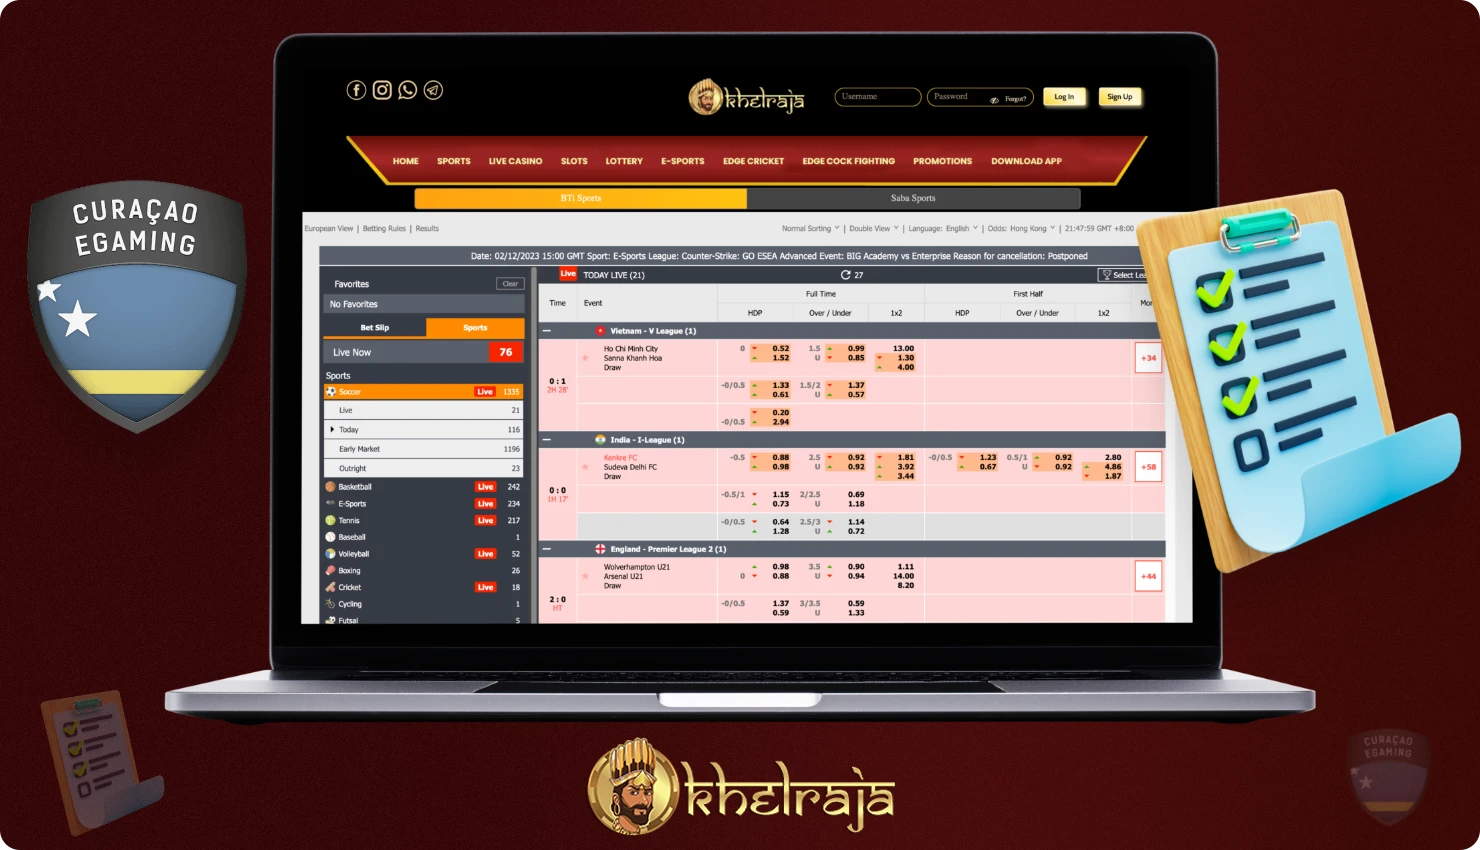 किसी भी अन्य कंपनी की तरह Khelraja के पास अपने उपयोगकर्ताओं के लिए बुनियादी शर्तें और आवश्यकताएं हैं